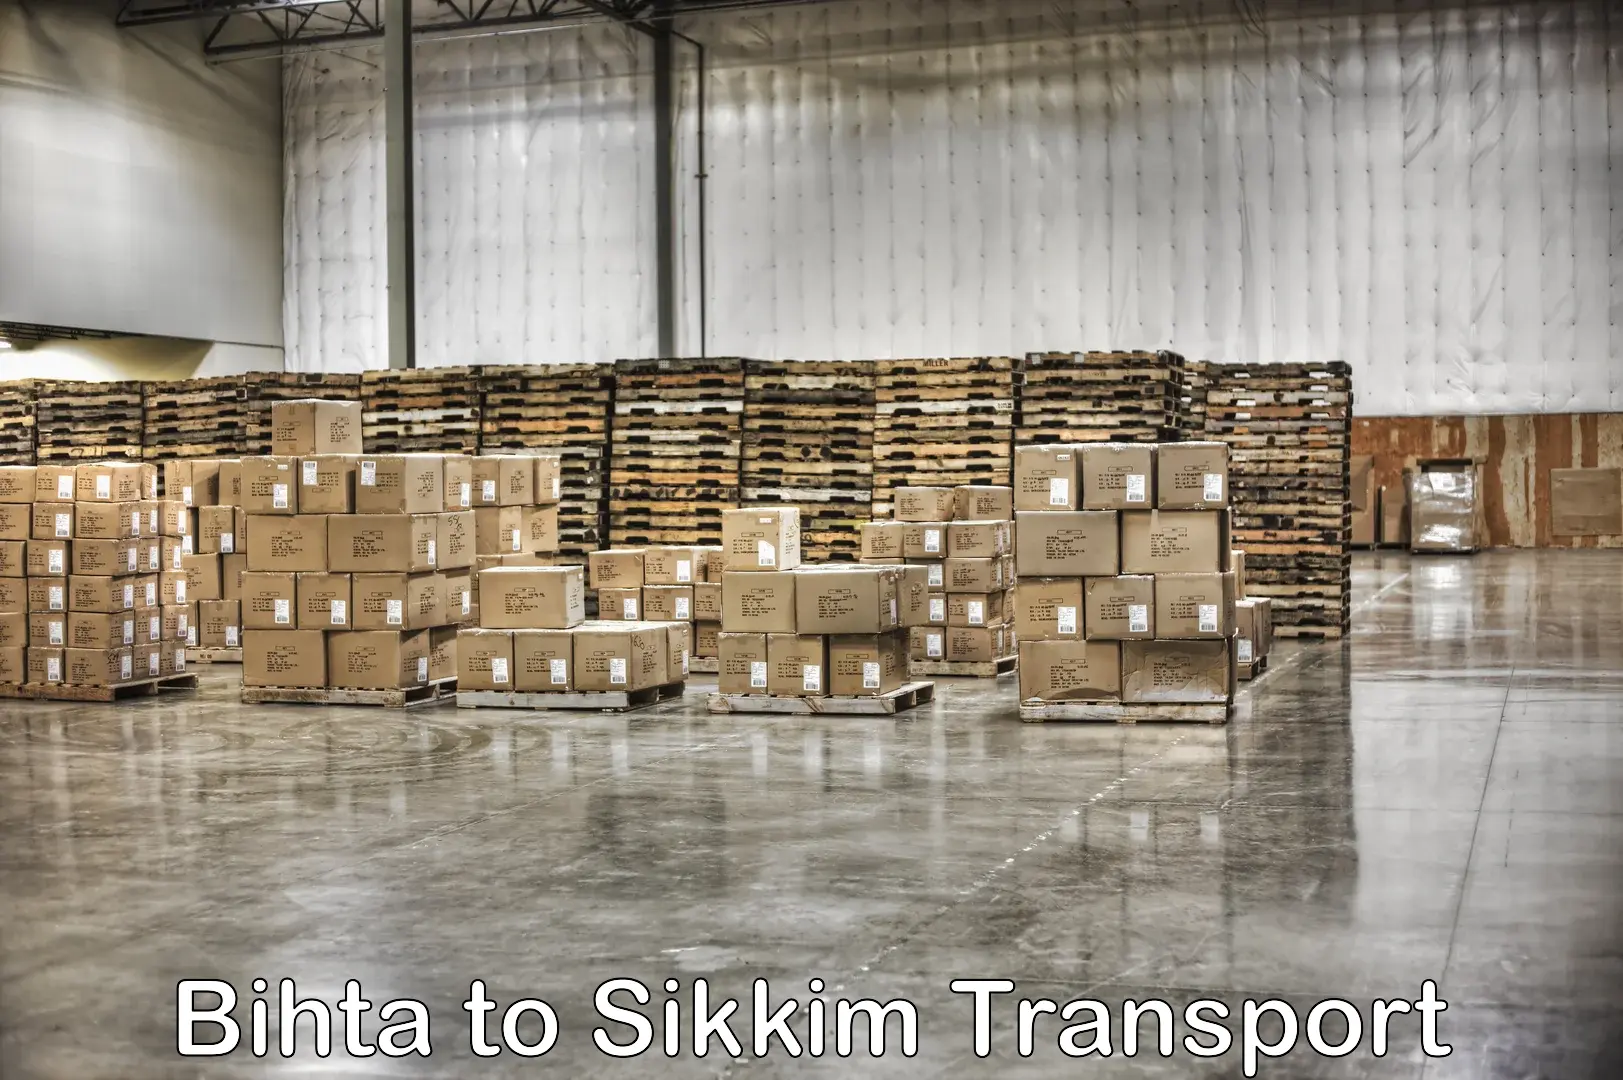 Interstate transport services Bihta to West Sikkim